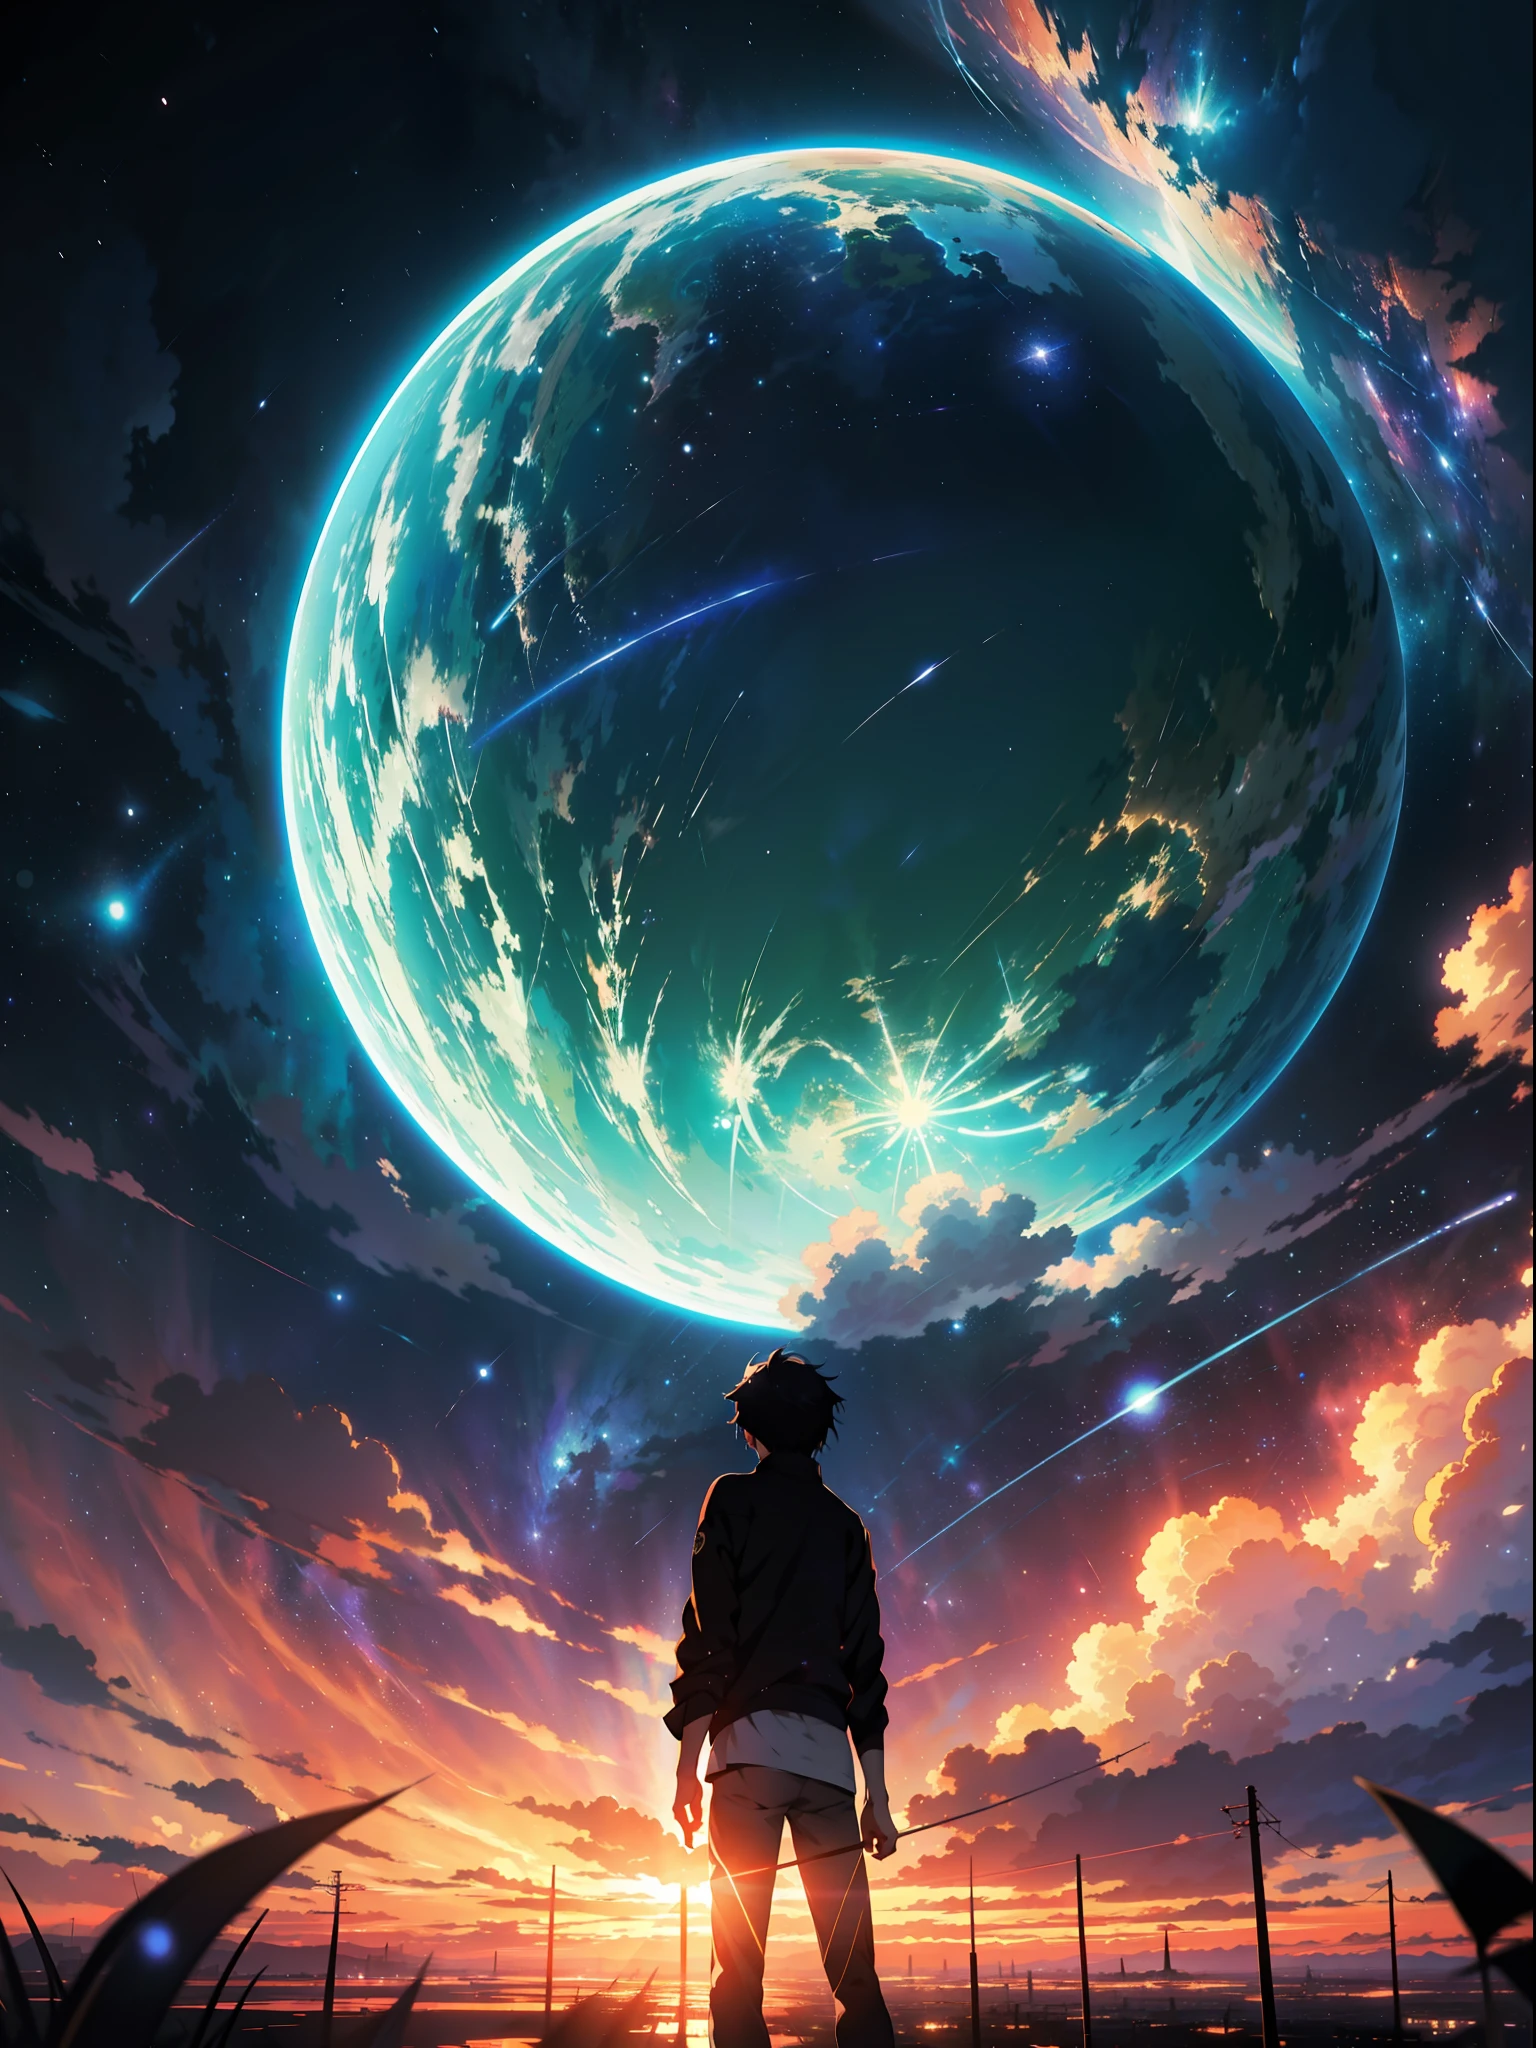 anime - cena estilo de um lindo céu com uma estrela e um planeta, céus cósmicos. por Makoto Shinkai, Papel de parede de arte anime 4k, papel de parede de arte de anime 4k, papel de parede de arte de anime 8k, papel de parede de anime 4K, papel de parede de anime 4k, Papel de parede de anime 4K, céu de anime, papel de parede incrível, Fundo de anime, planeta céu ao fundo, Fundo de anime art